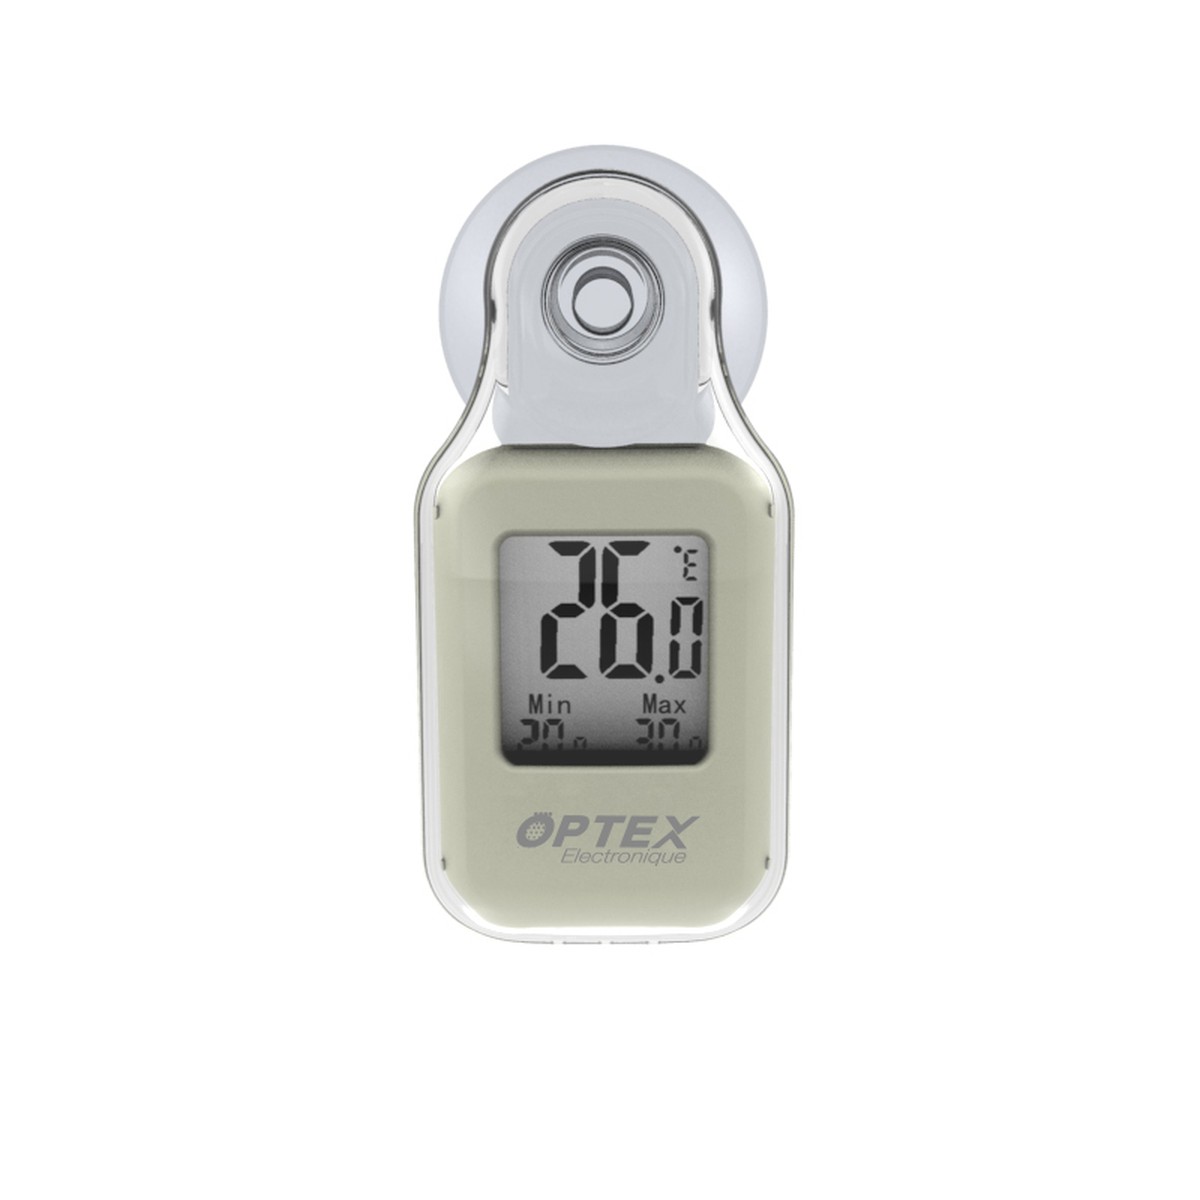 Thermomètre extérieur numérique avec ventouse